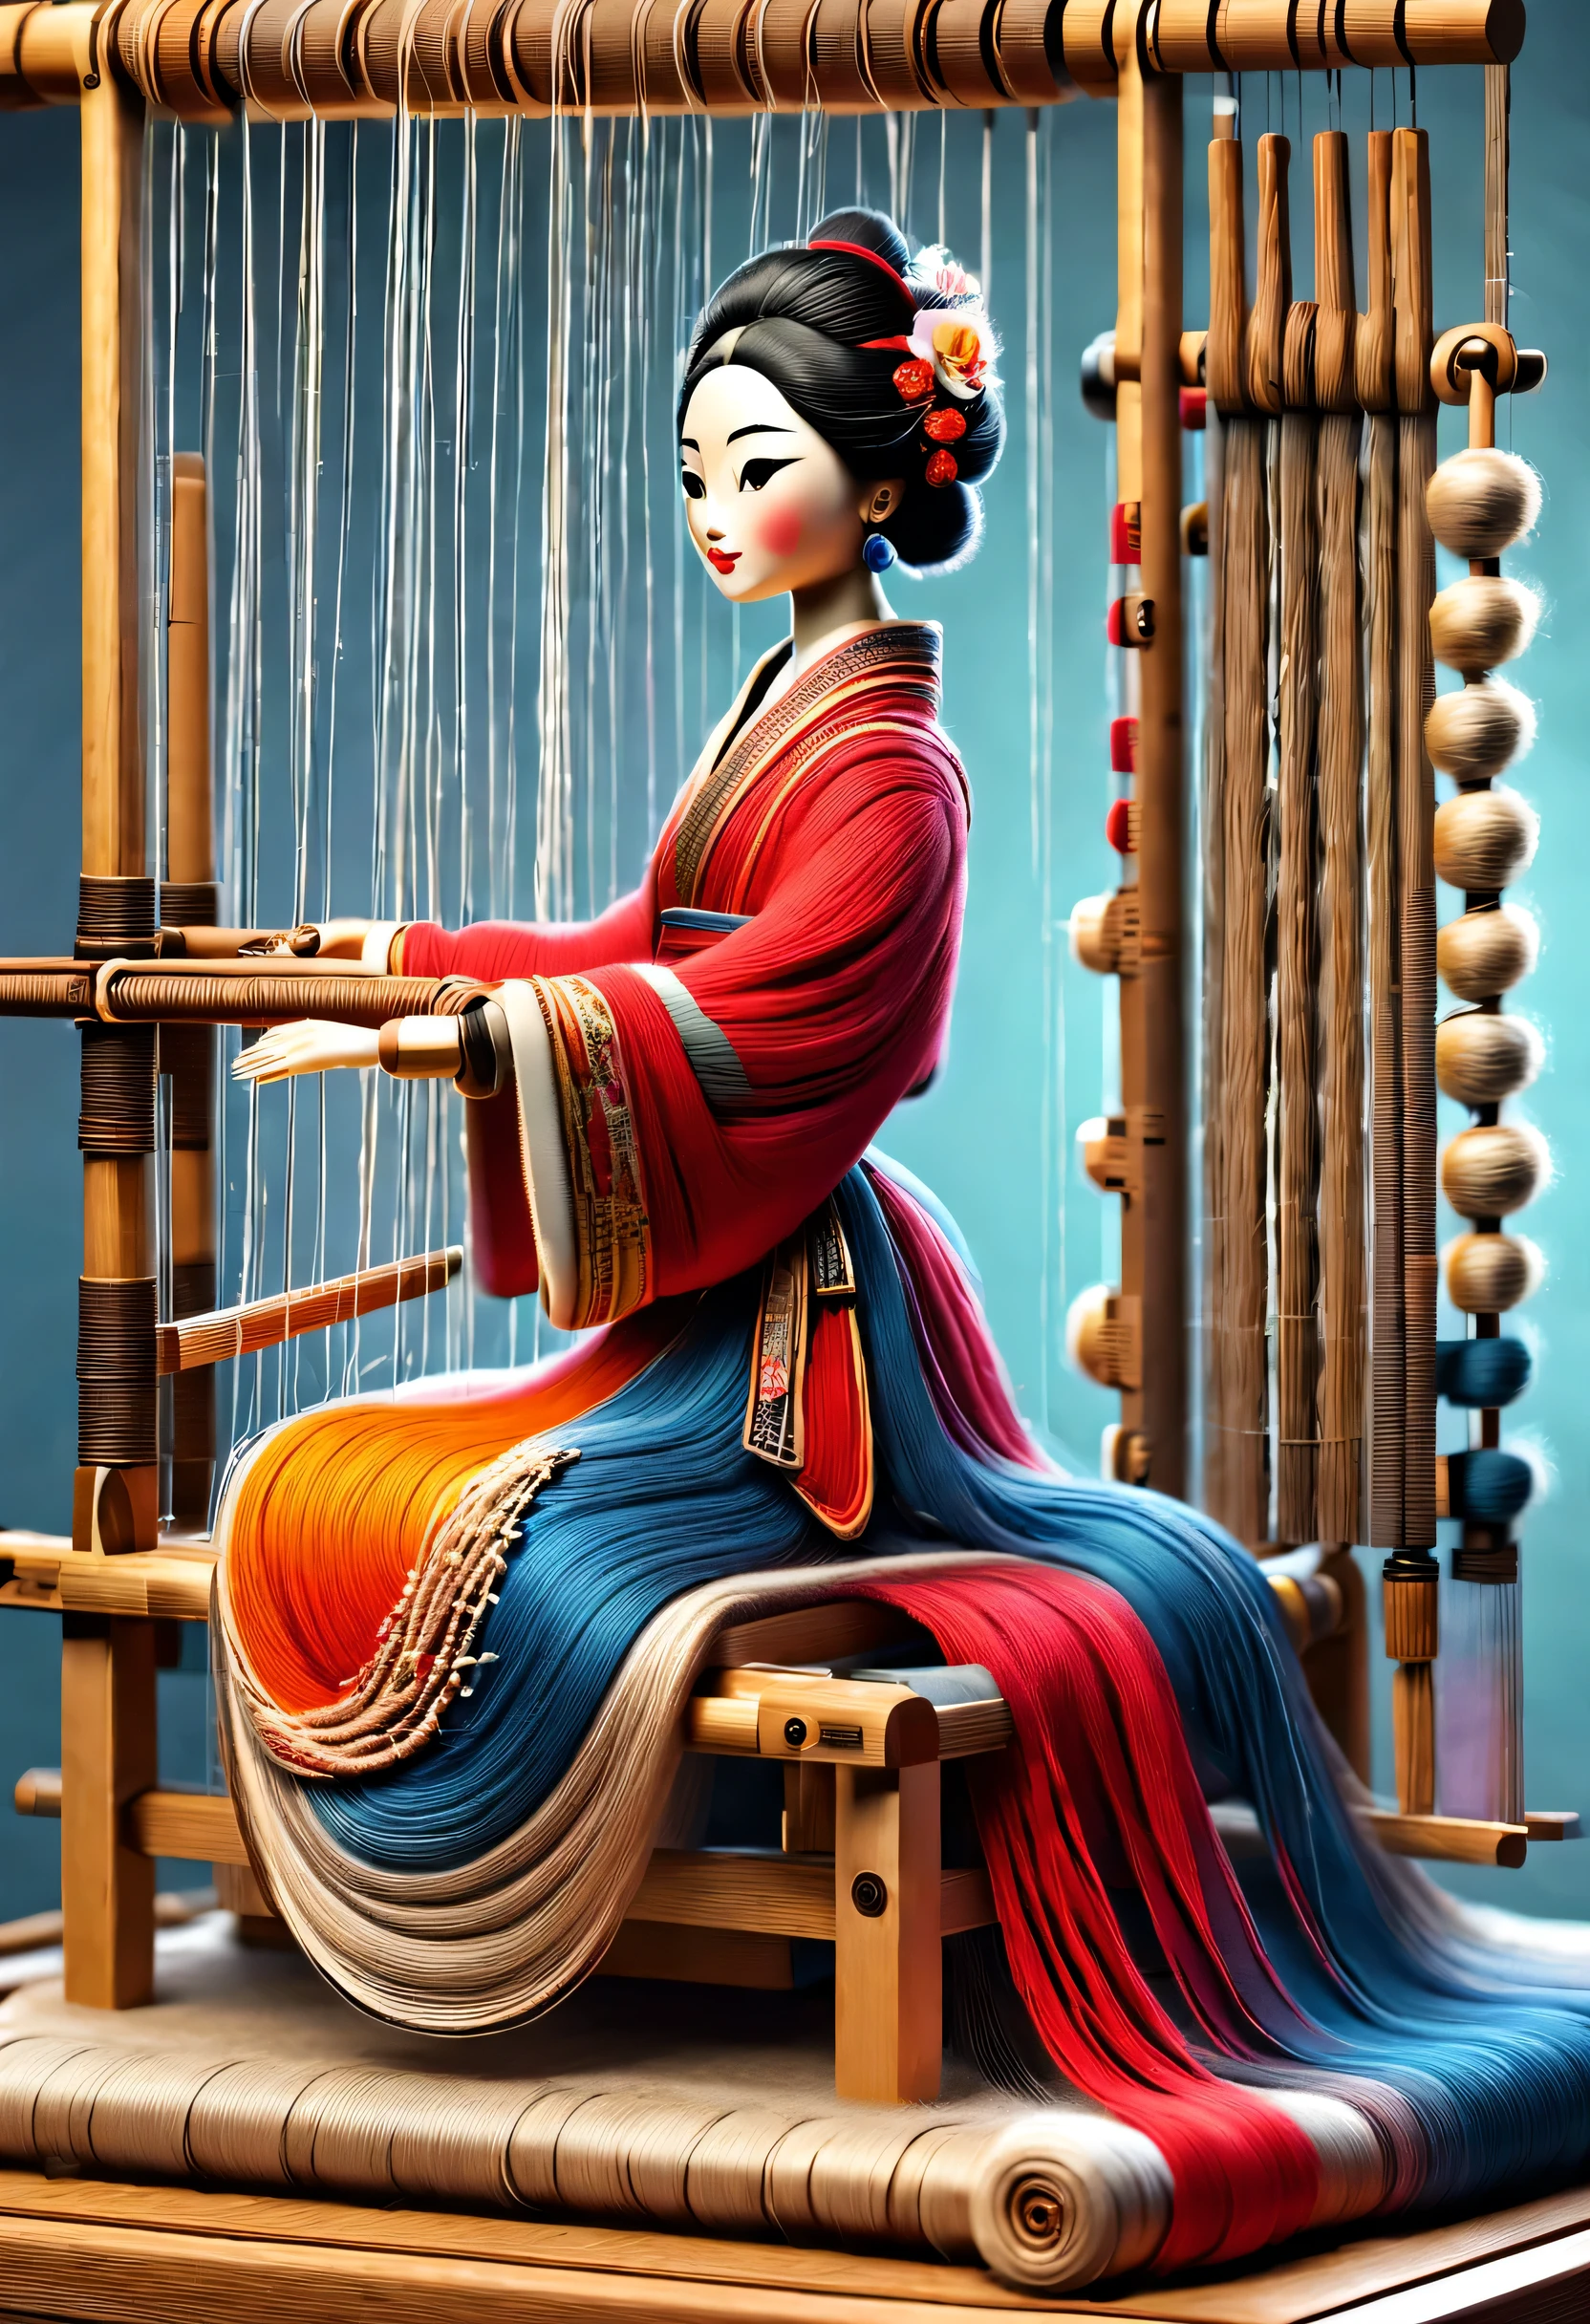 中国&#39;獨特的高端木匠雕塑風格，角色是全身，（坐在中國古代織布機前的機械娃娃），靈感源自江寧織造博物館的織布機，木梭織布機，織布機框架、兄弟、織布機頭、梭子和紗線成分。織布機框架用于支撑織布機頭和兄弟，它們透過一系列機械運動來執行編織功能。梭子是織布必備的配件，主要負責輸送紗線，實現編織功能, 可愛又美麗的臉, 超長紅色雙辮子, 蓝色和橙色的裙子, 細長的機械木臂和腿, 美觀細緻，旋轉, 舞蹈, 8K, 超詳細, 实际的, 高解析度, 光線追蹤,紗線藝術